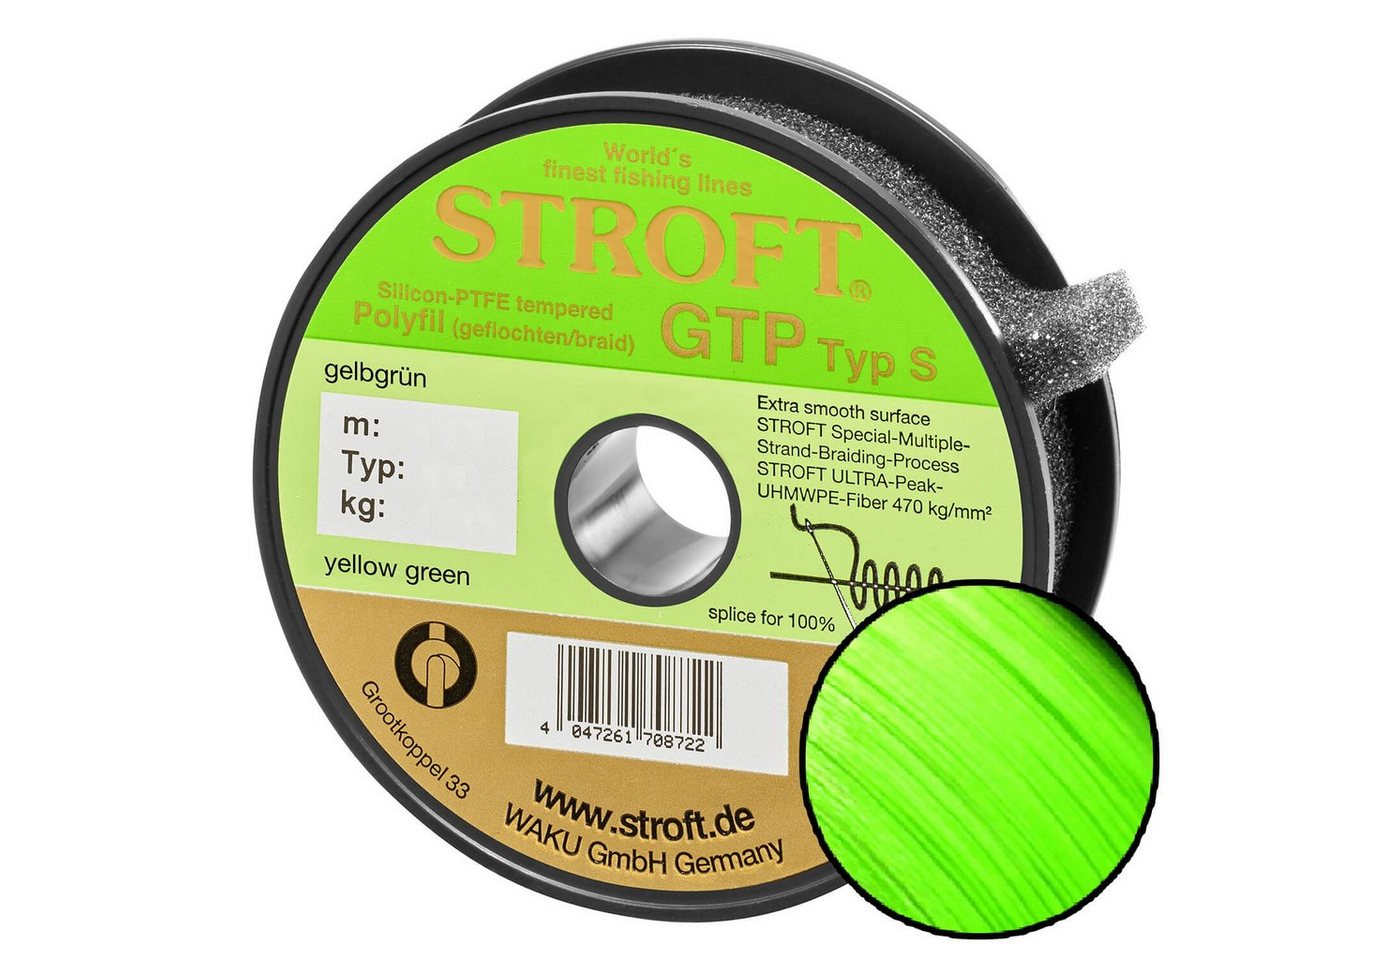 Stroft Angelschnur STROFT GTP Typ S Geflochtene Angelschnur 200m Gelbgrün, 200 m Länge, 0.15 mm Fadendurchmesser, (1-St), 5.0kg Tragkraft von Stroft